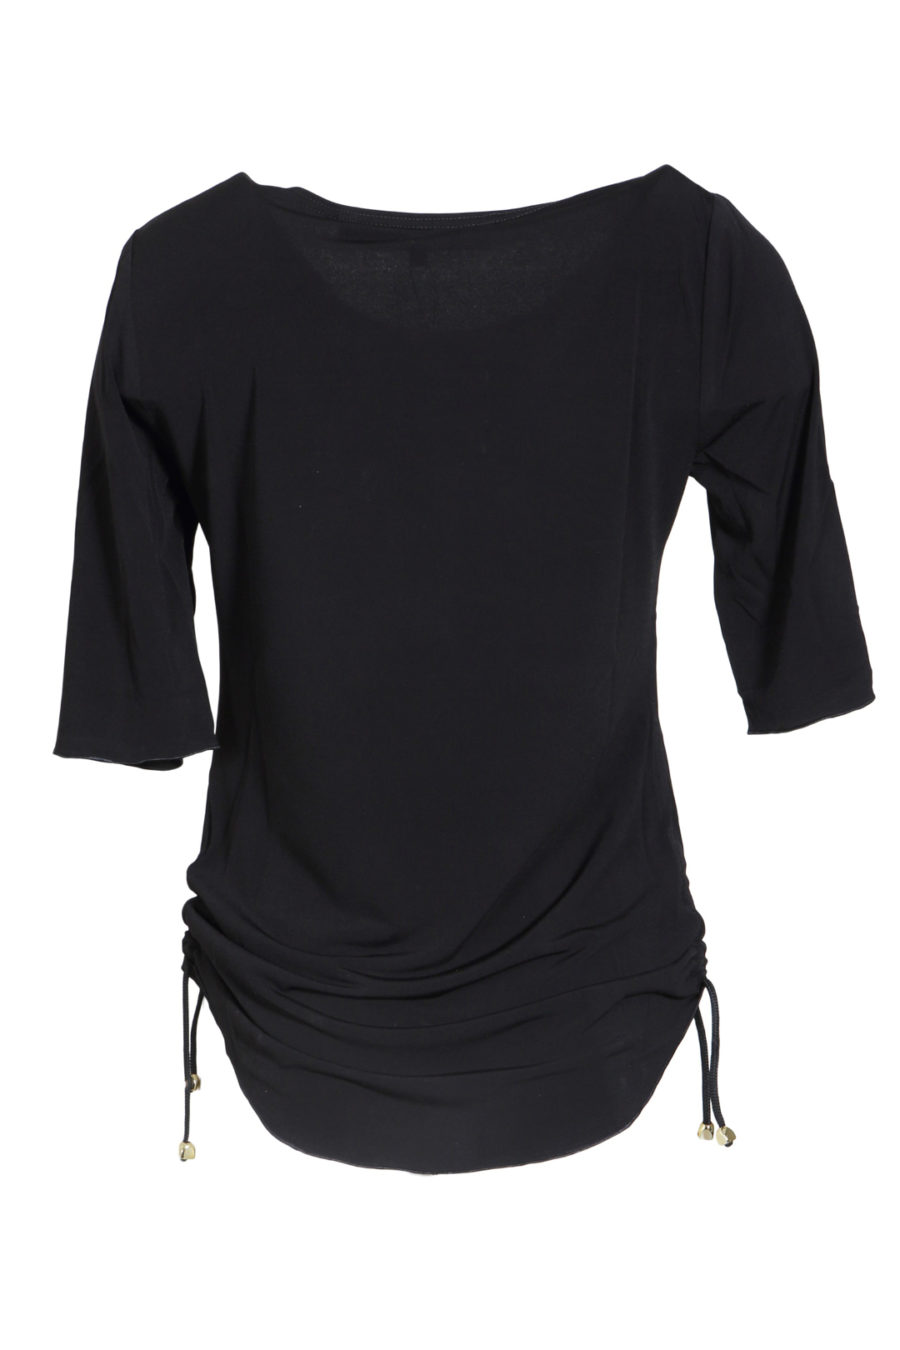 Shirt black with drawcords, uni KA